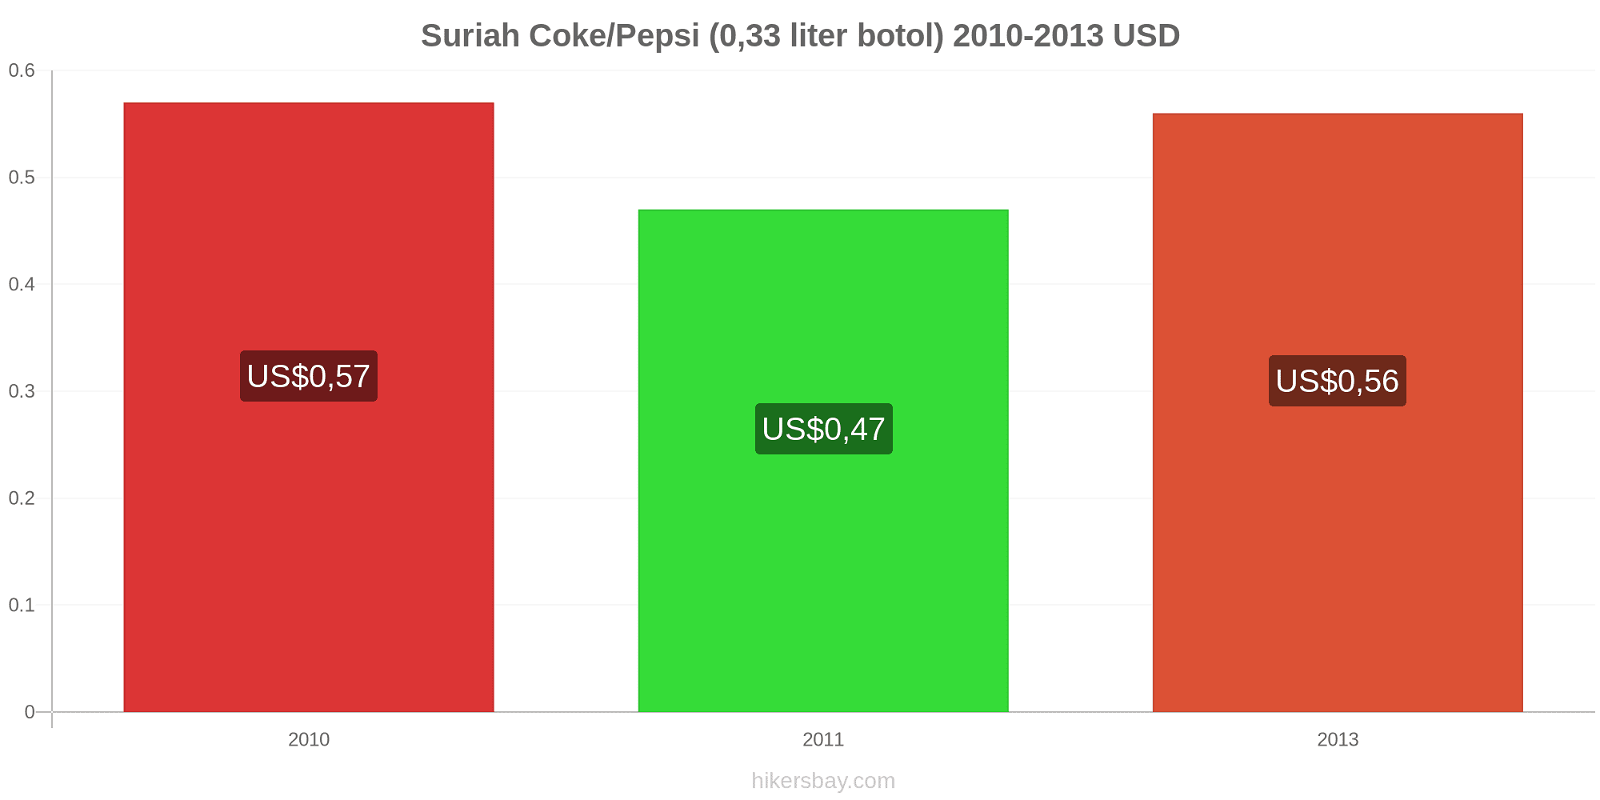 Suriah perubahan harga Coca-Cola/Pepsi (botol 0.33 liter) hikersbay.com